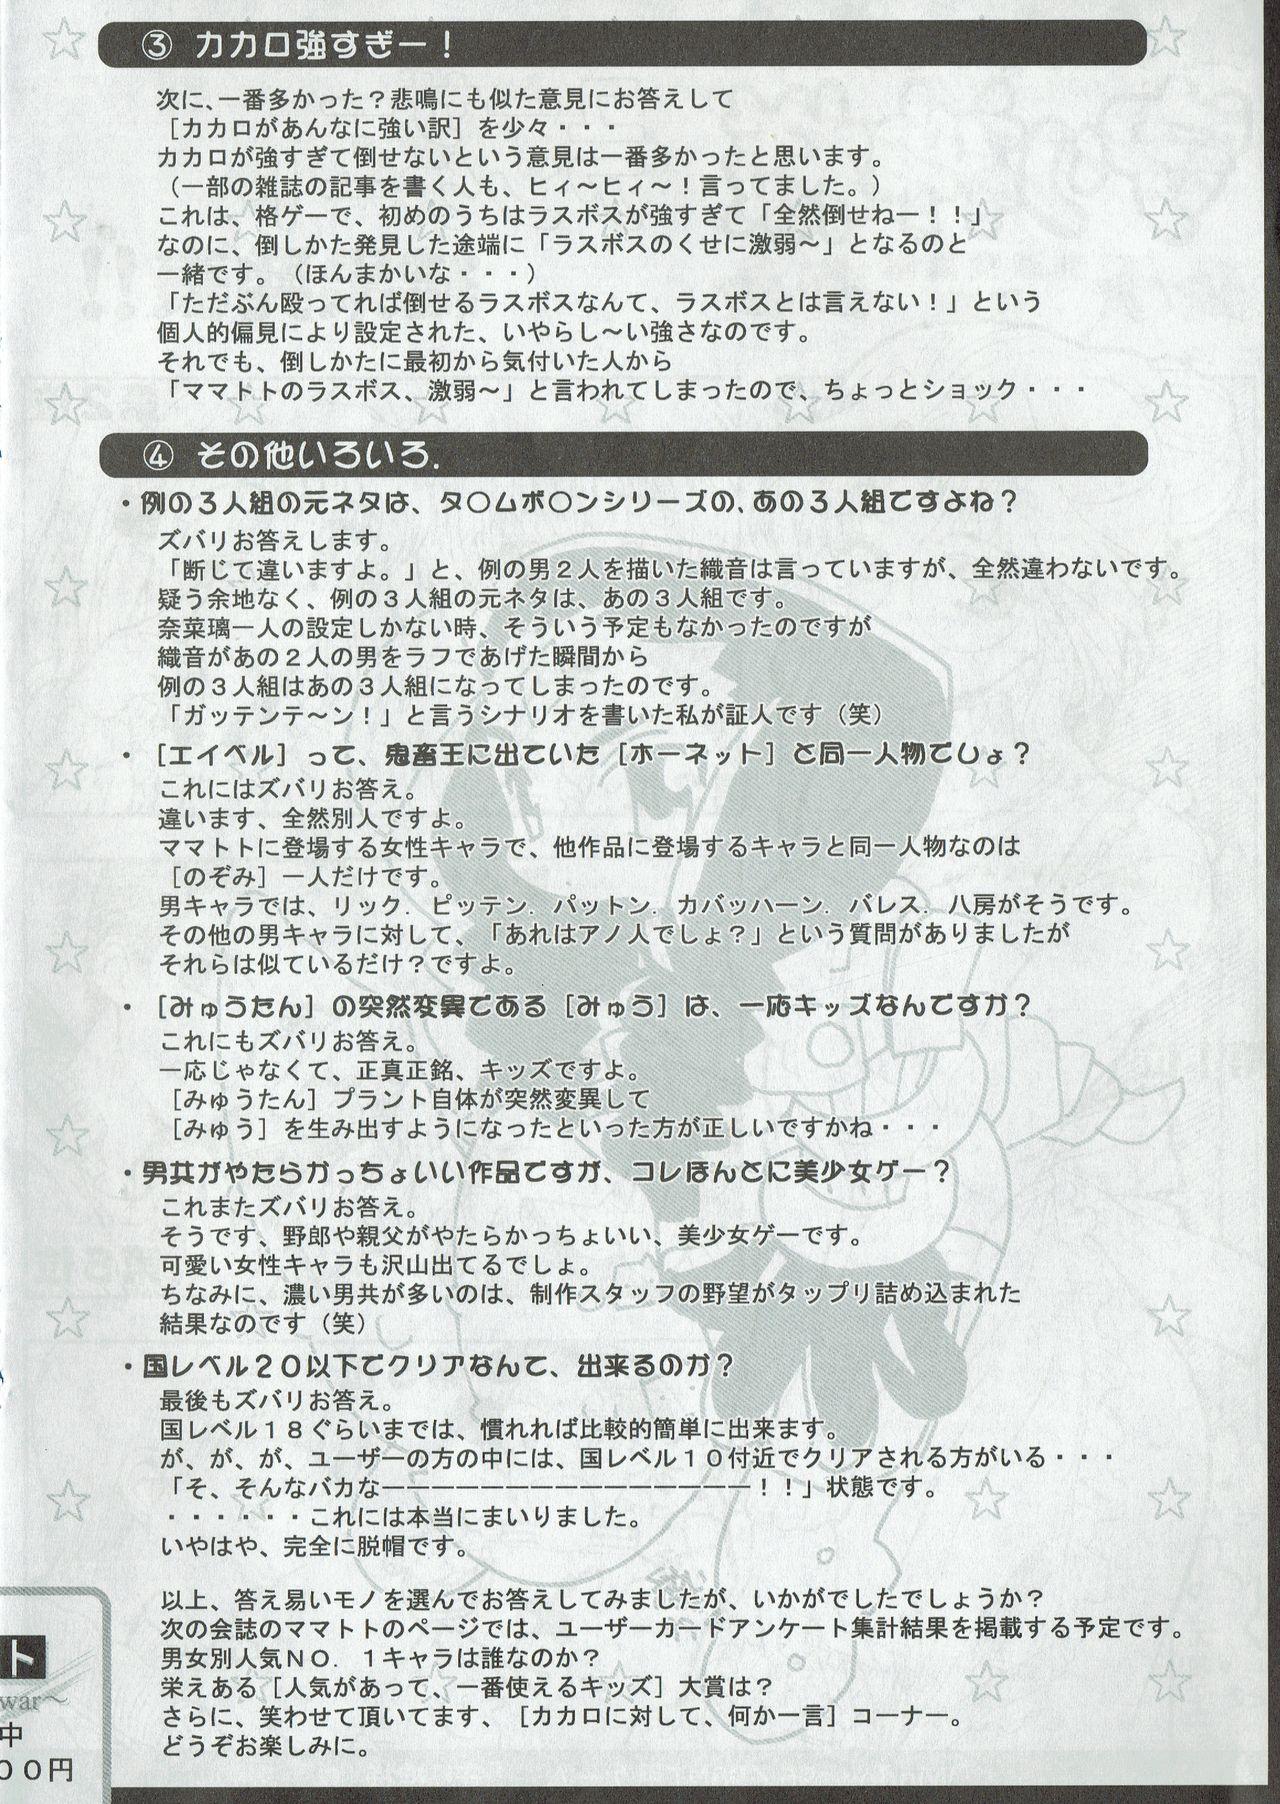 Arisu no Denchi Bakudan Vol. 07 6